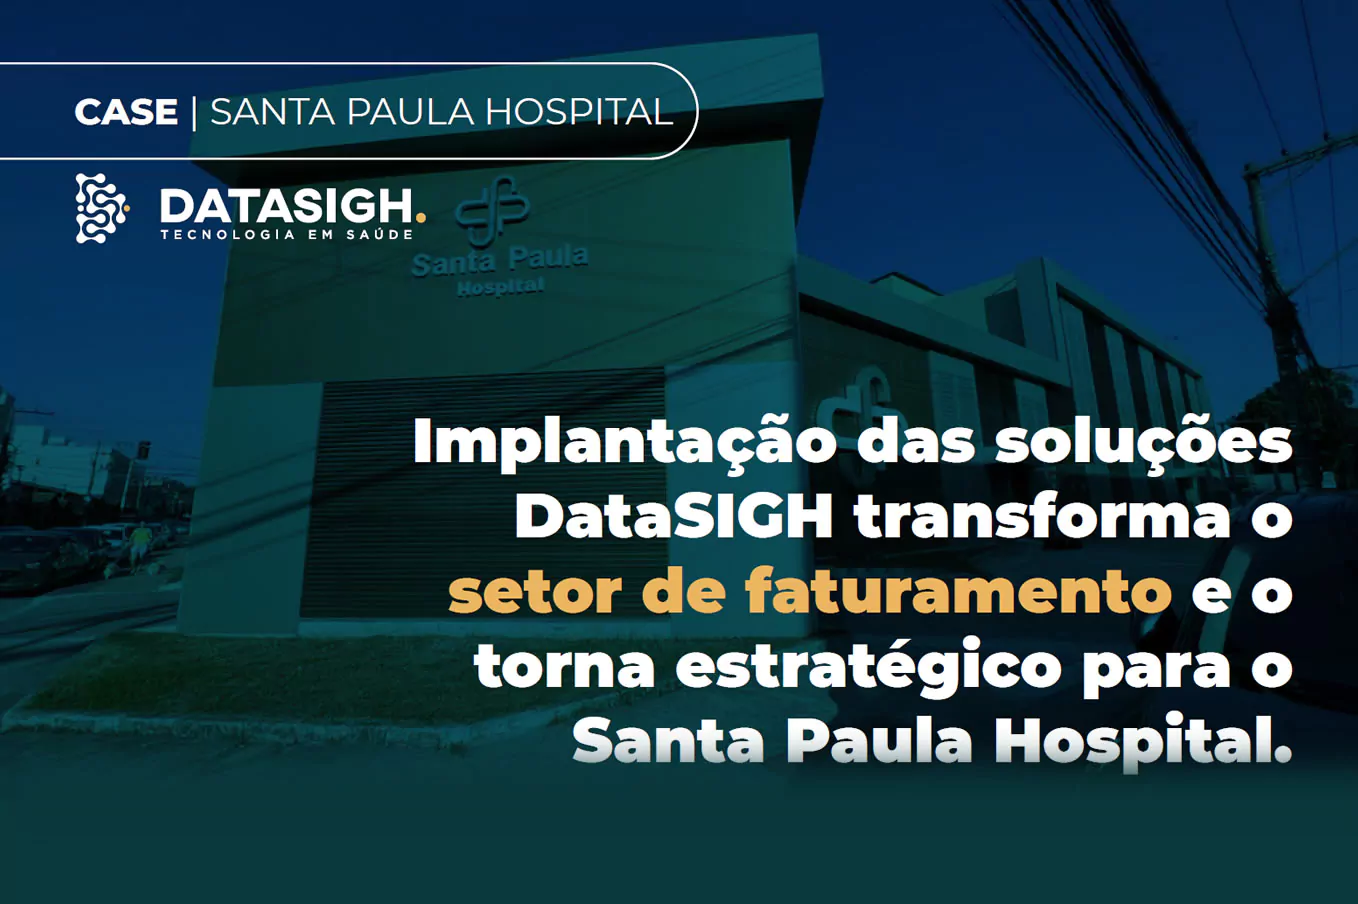 SANTA PAULA HOSPITAL